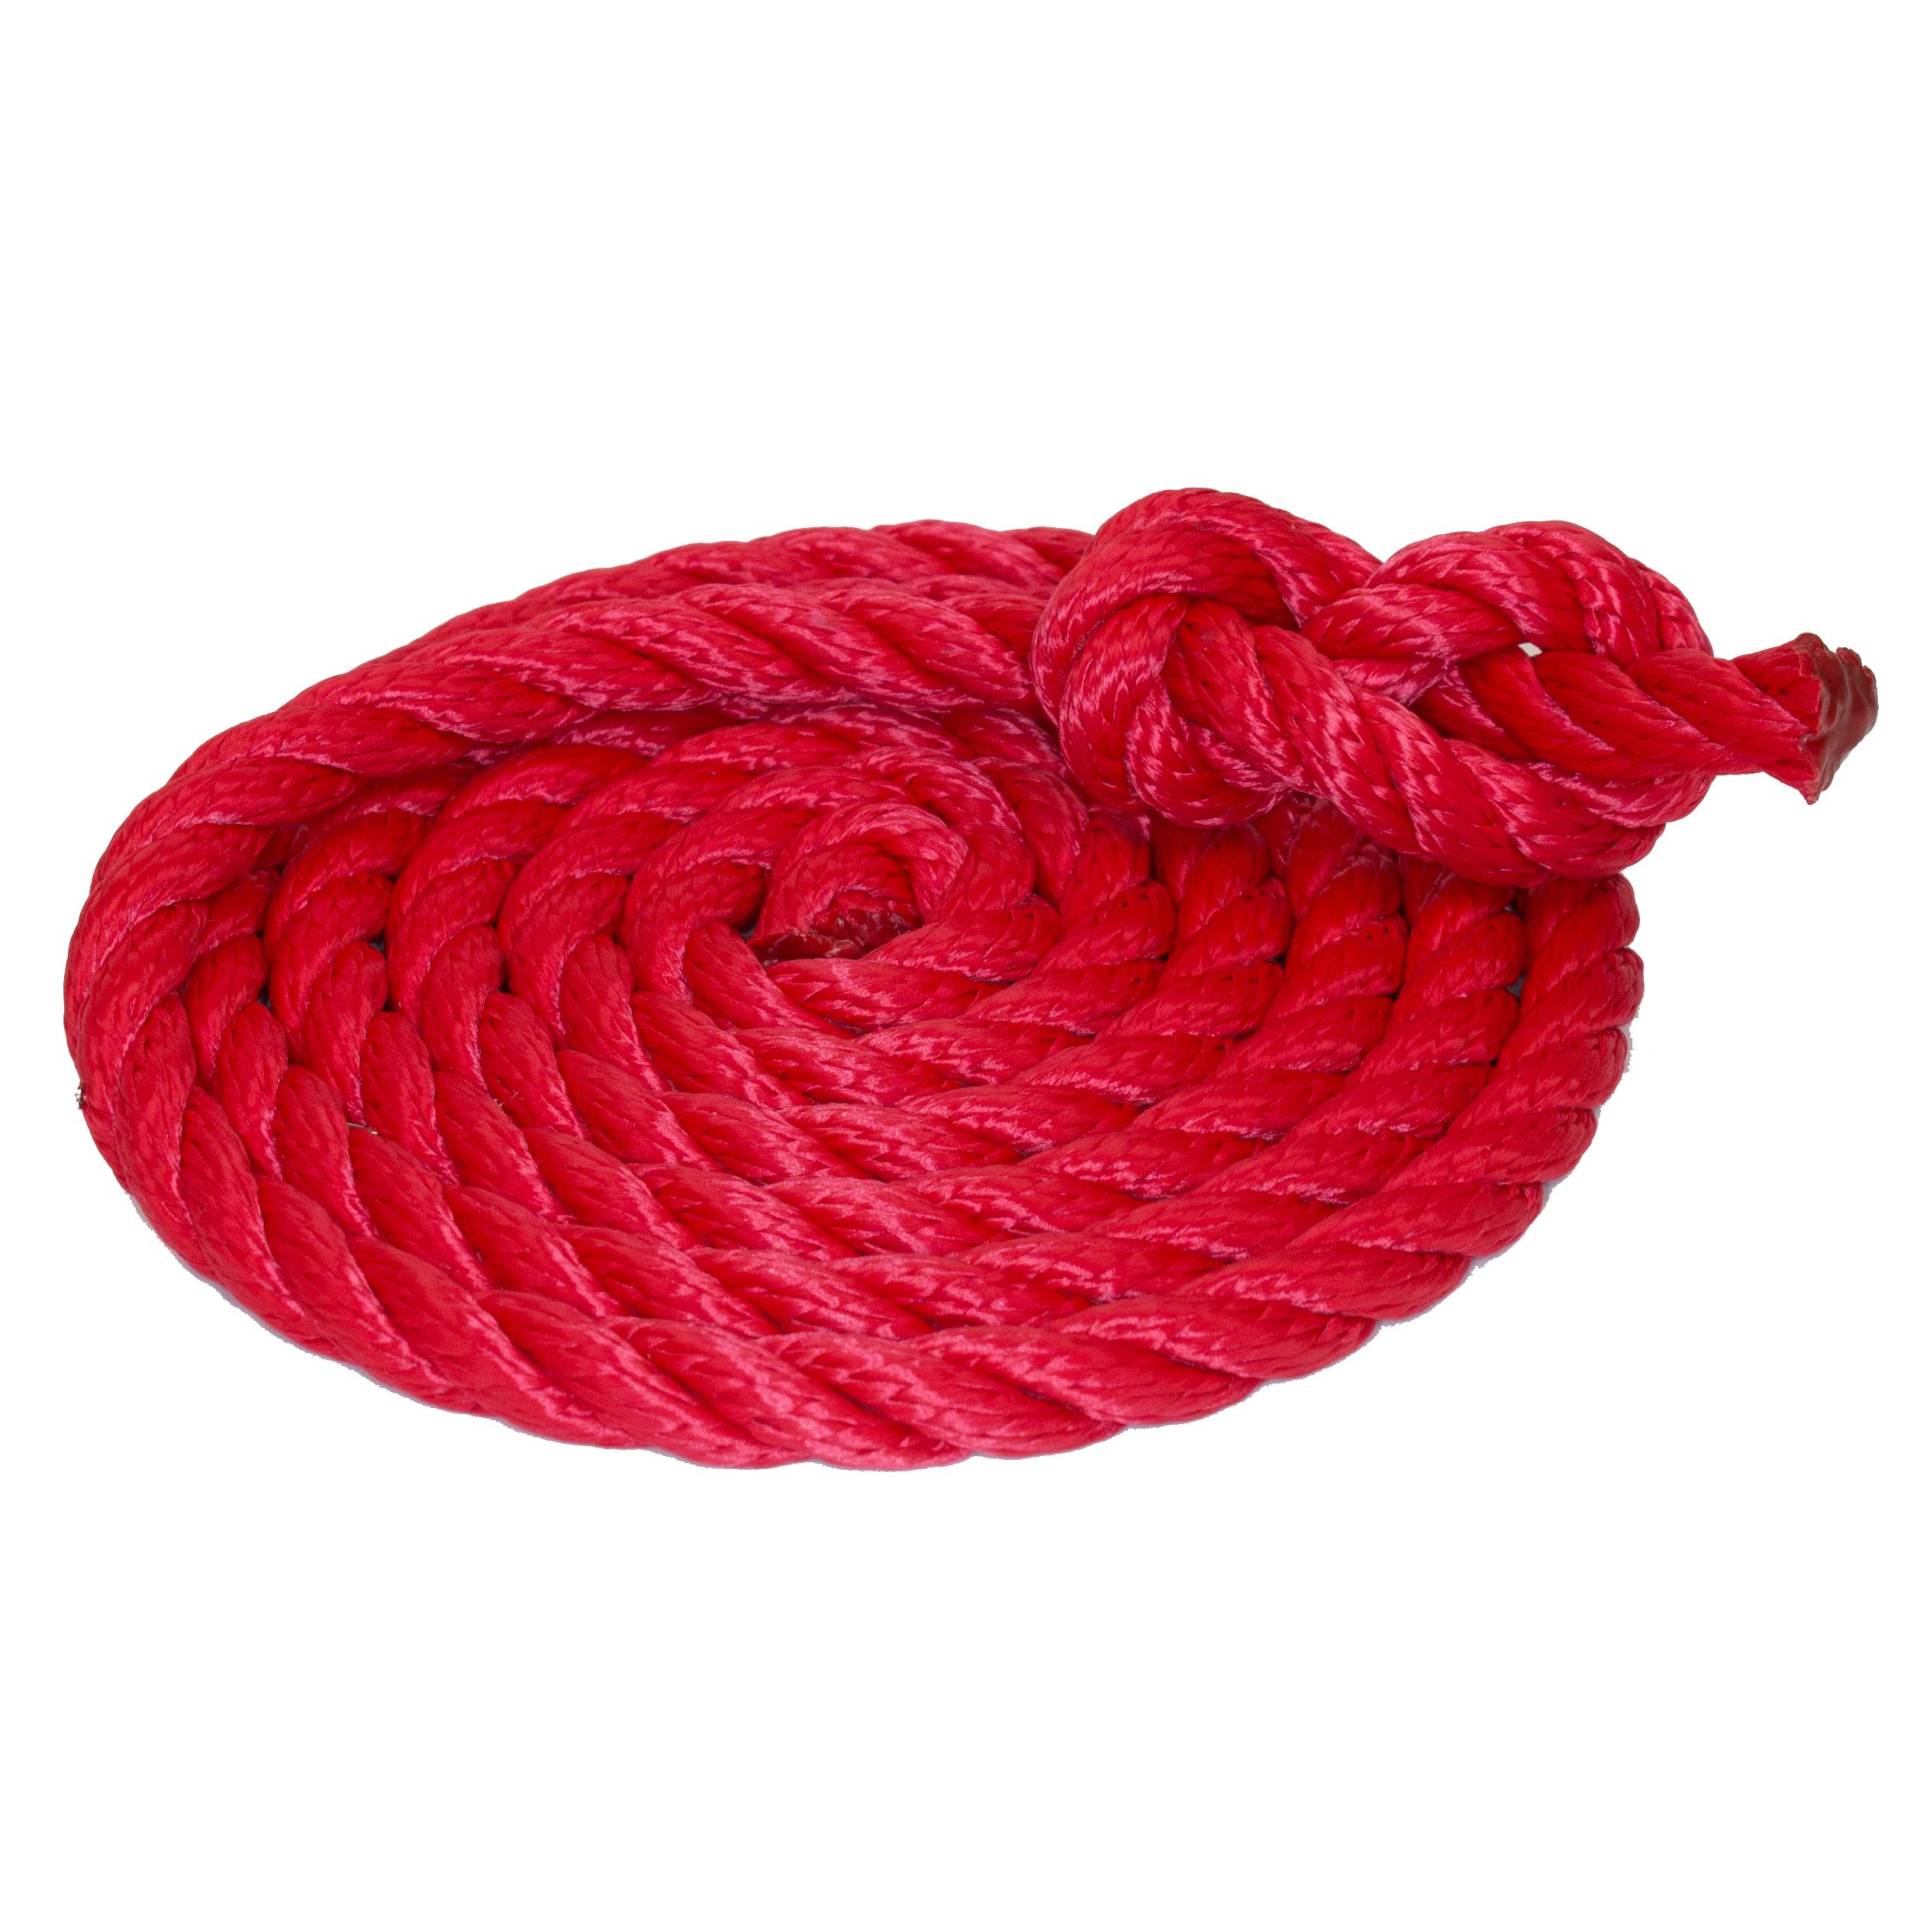 Tauwerk 10mm - Farbe: rot 3-litzig gedreht Leine Schnur Festmacher Rope Tau Seil Allzweckseil Reepschnur Lirolen-Tauwerk PP-Multifil, 3-schäftig gedreht (Länge 40mtr.) von HAMBURGER TAUWERK-FABRIK EST. 1901